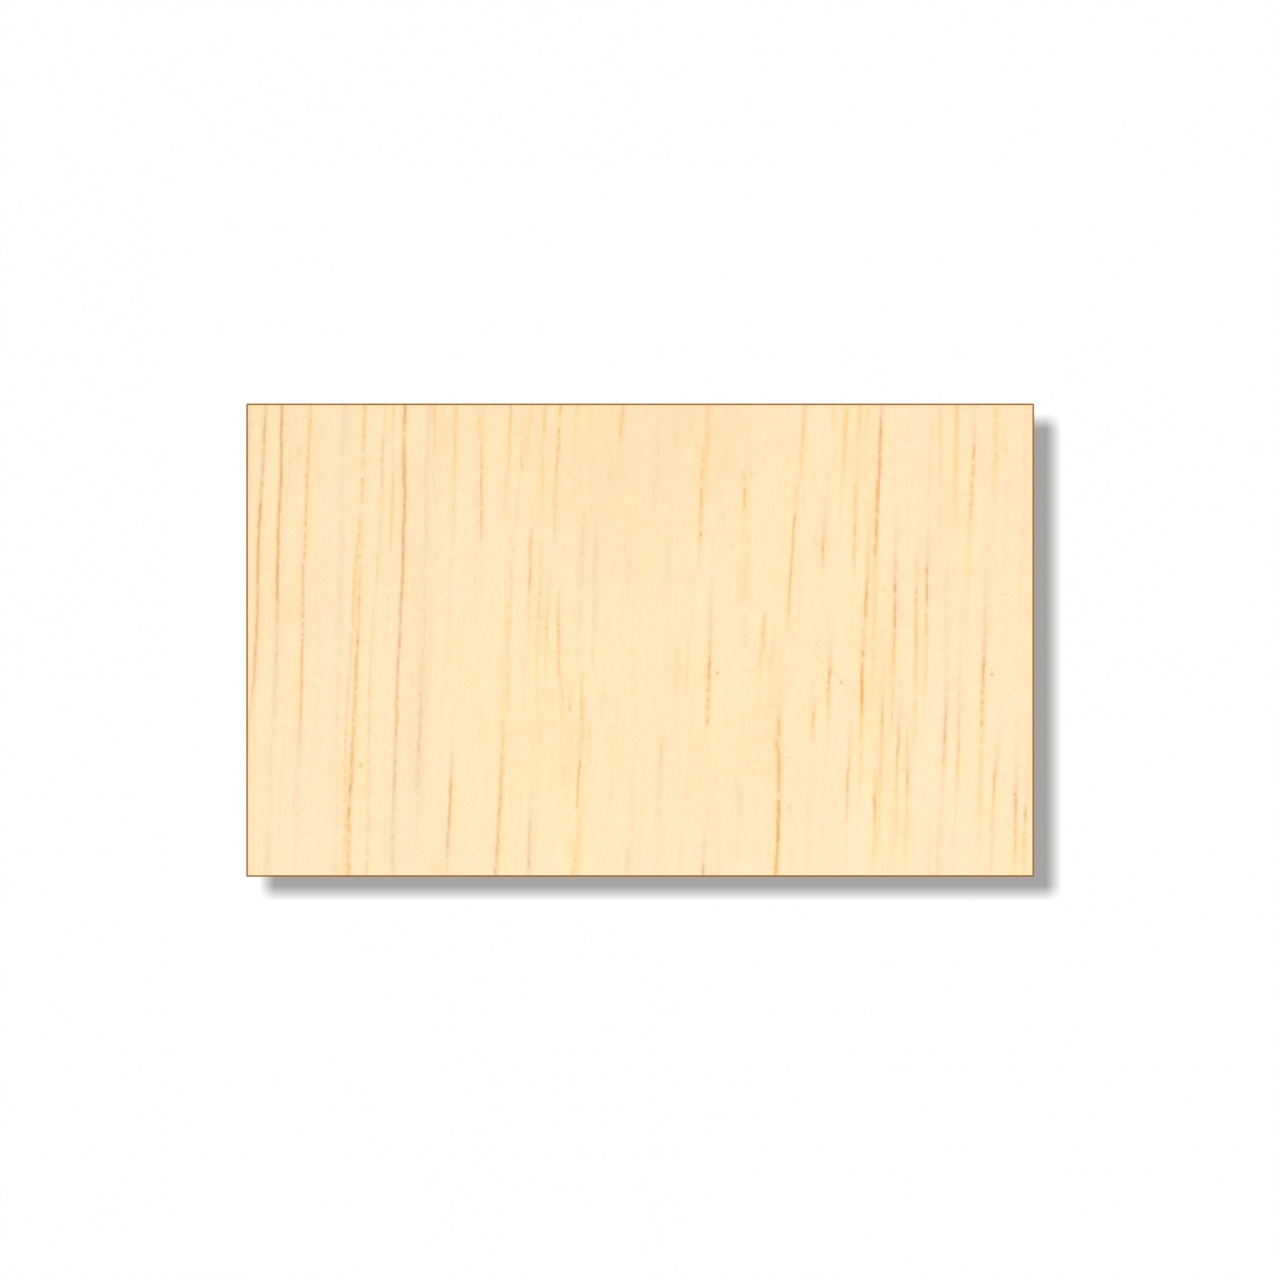 Dreptunghi, 5×3 cm, placaj lemn natur :: 5x3 cm